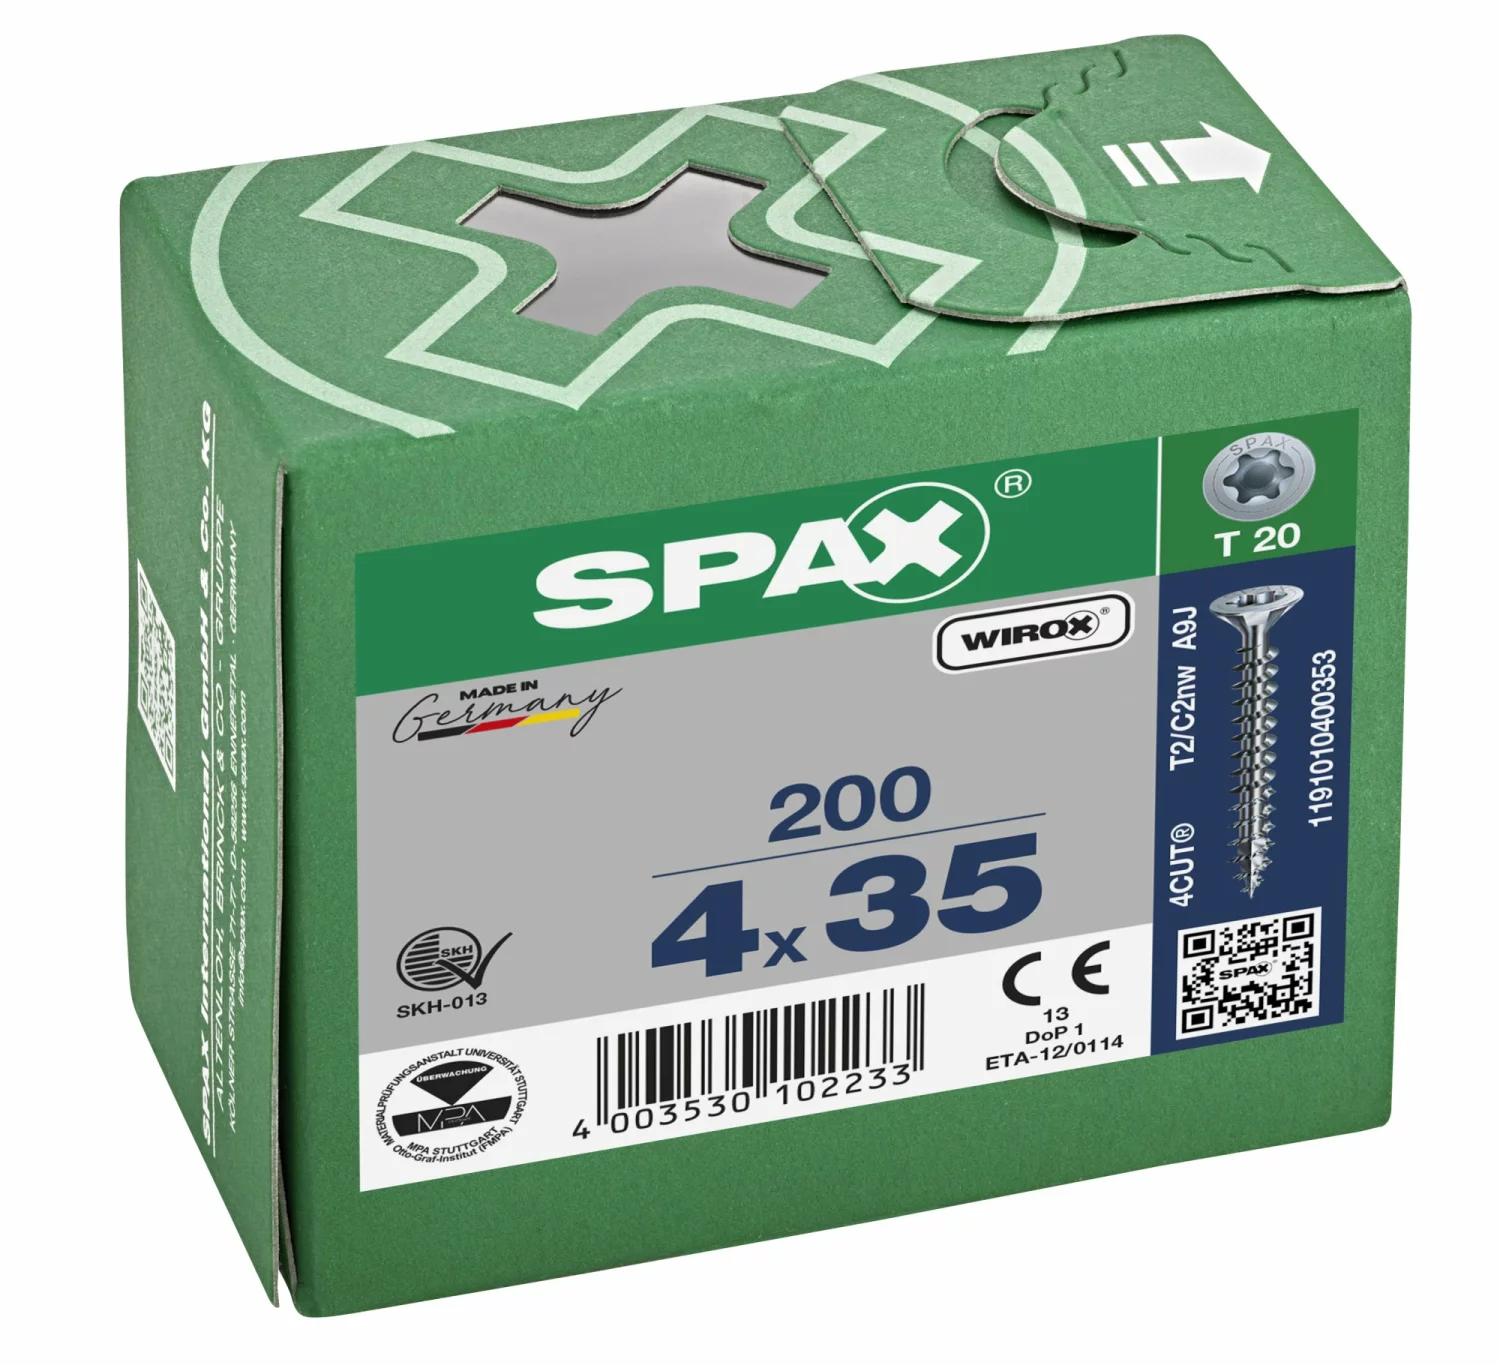 SPAX 1191010400353 Universele schroef, Verzonken kop, 4 x 35, Voldraad, T-STAR plus TX20 - WIROX - 200 stuks